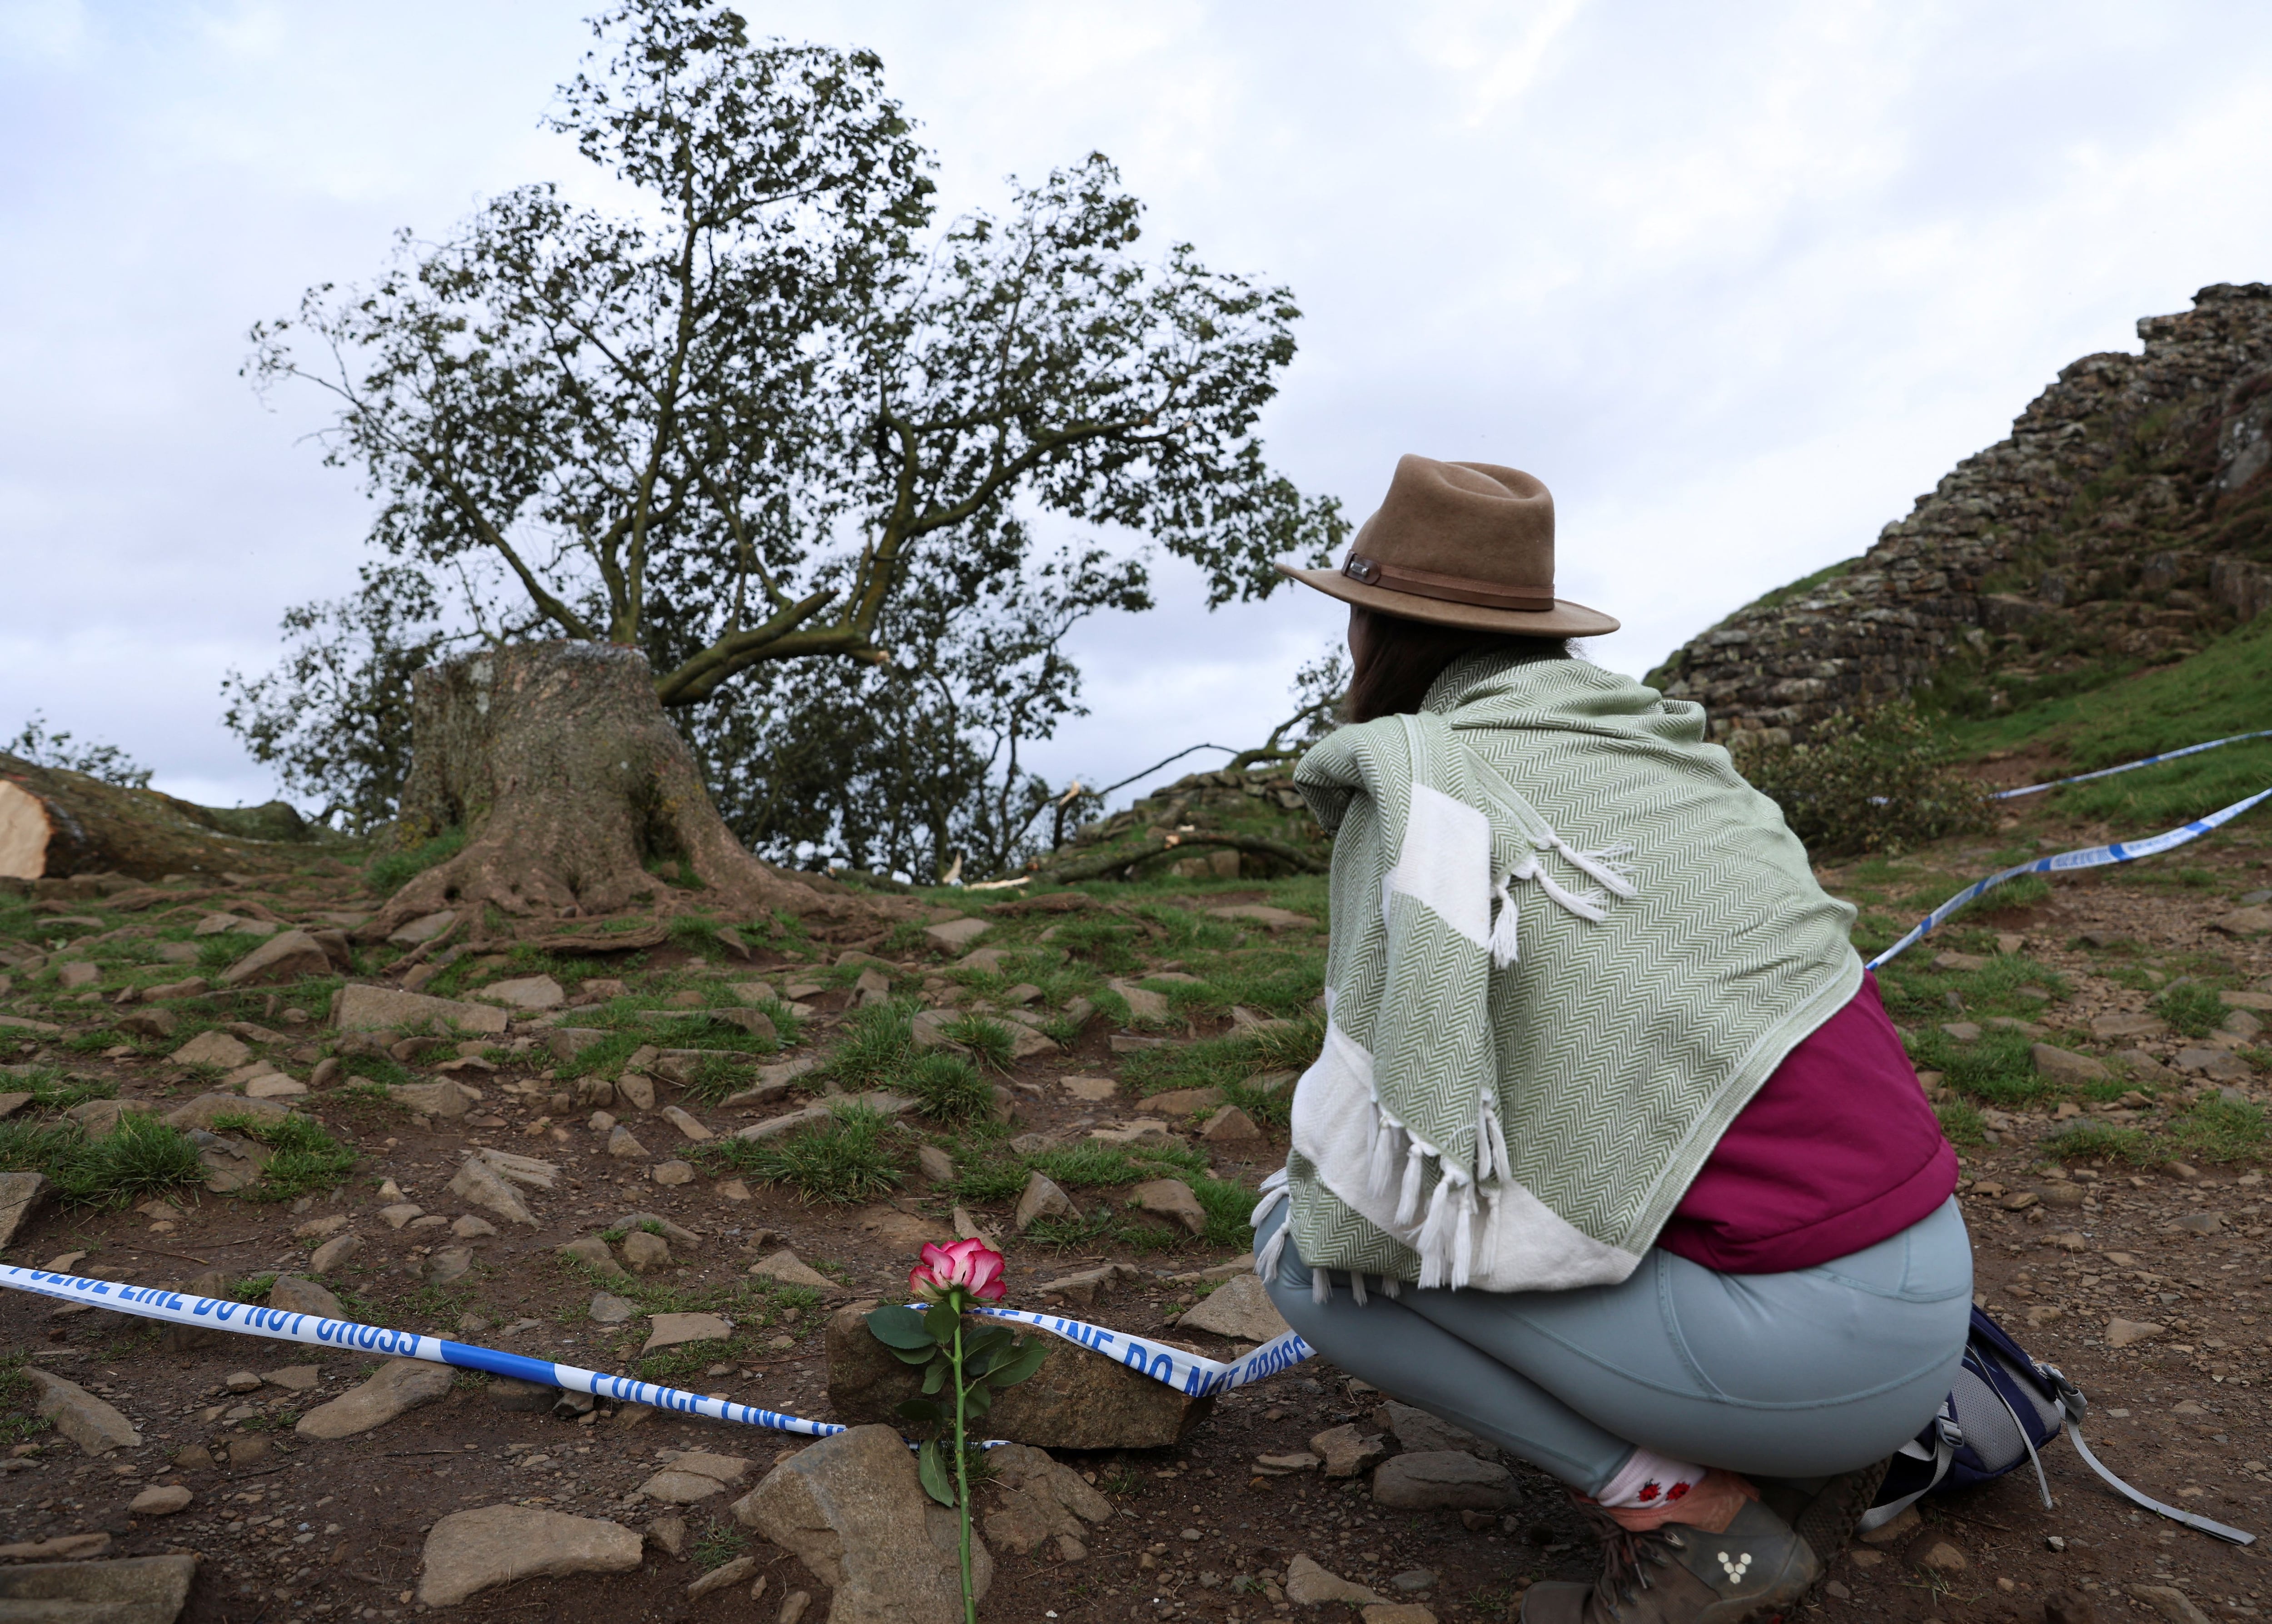 Pese al pedido de las autoridades, algunas personas se acercaron a ver el emblemático árbol caído (REUTERS/Lee Smith)